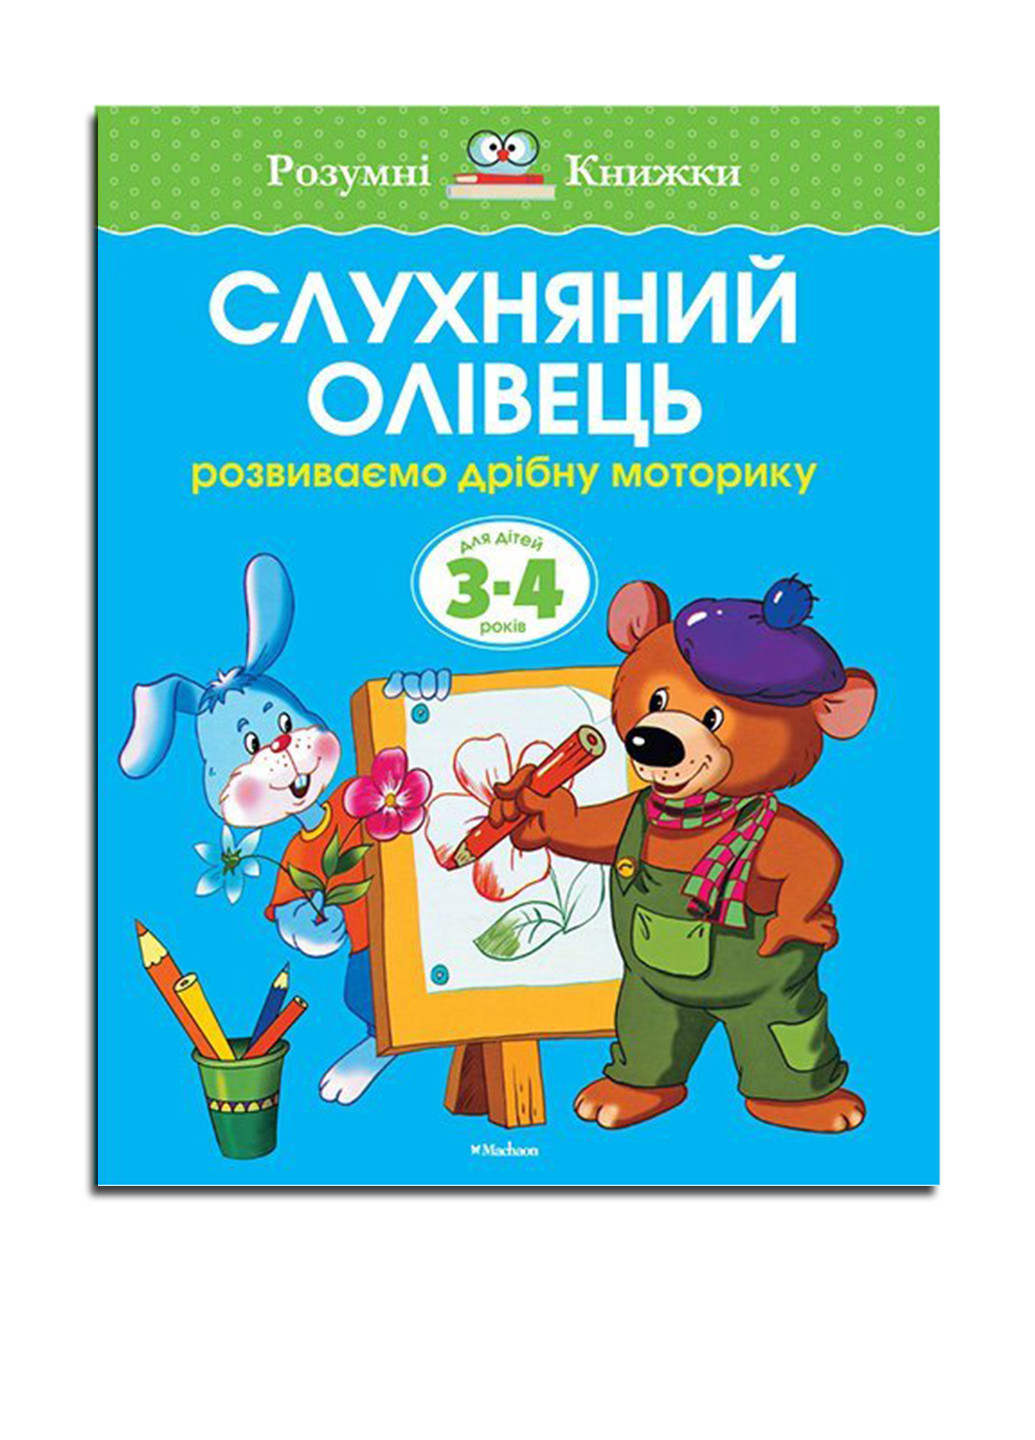 Книга "Послушный карандаш. Для детей 3-4 лет" Издательство "Махаон" (16955324)